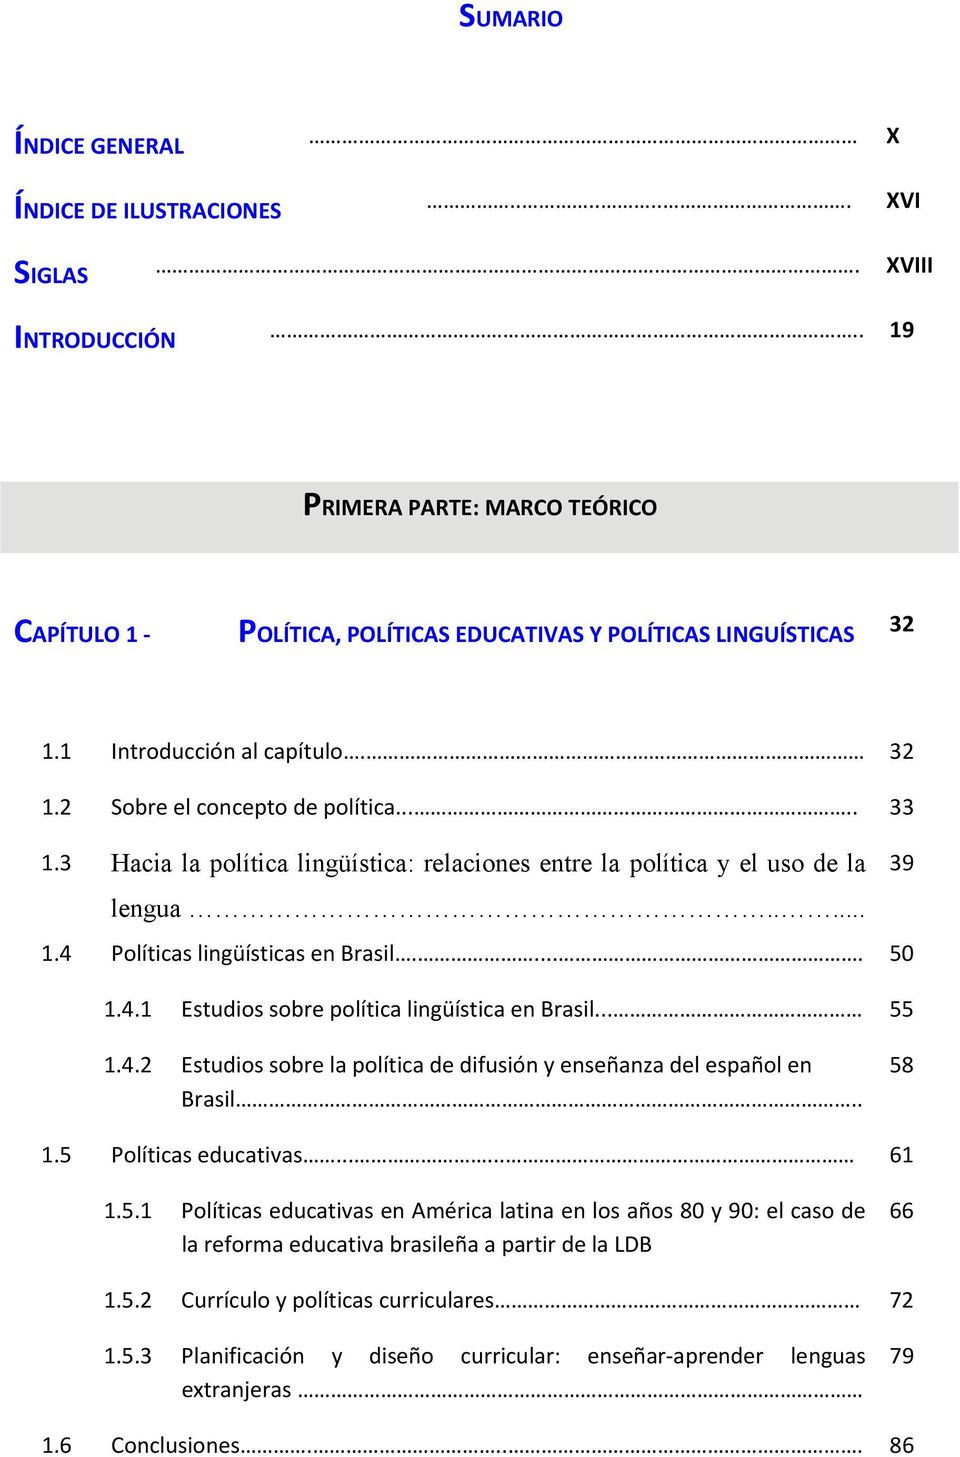 .... 50 1.4.1 Estudios sobre política lingüística en Brasil... 55 1.4.2 Estudios sobre la política de difusión y enseñanza del español en Brasil.. 58 1.5 Políticas educativas...... 61 1.5.1 Políticas educativas en América latina en los años 80 y 90: el caso de la reforma educativa brasileña a partir de la LDB 66 1.